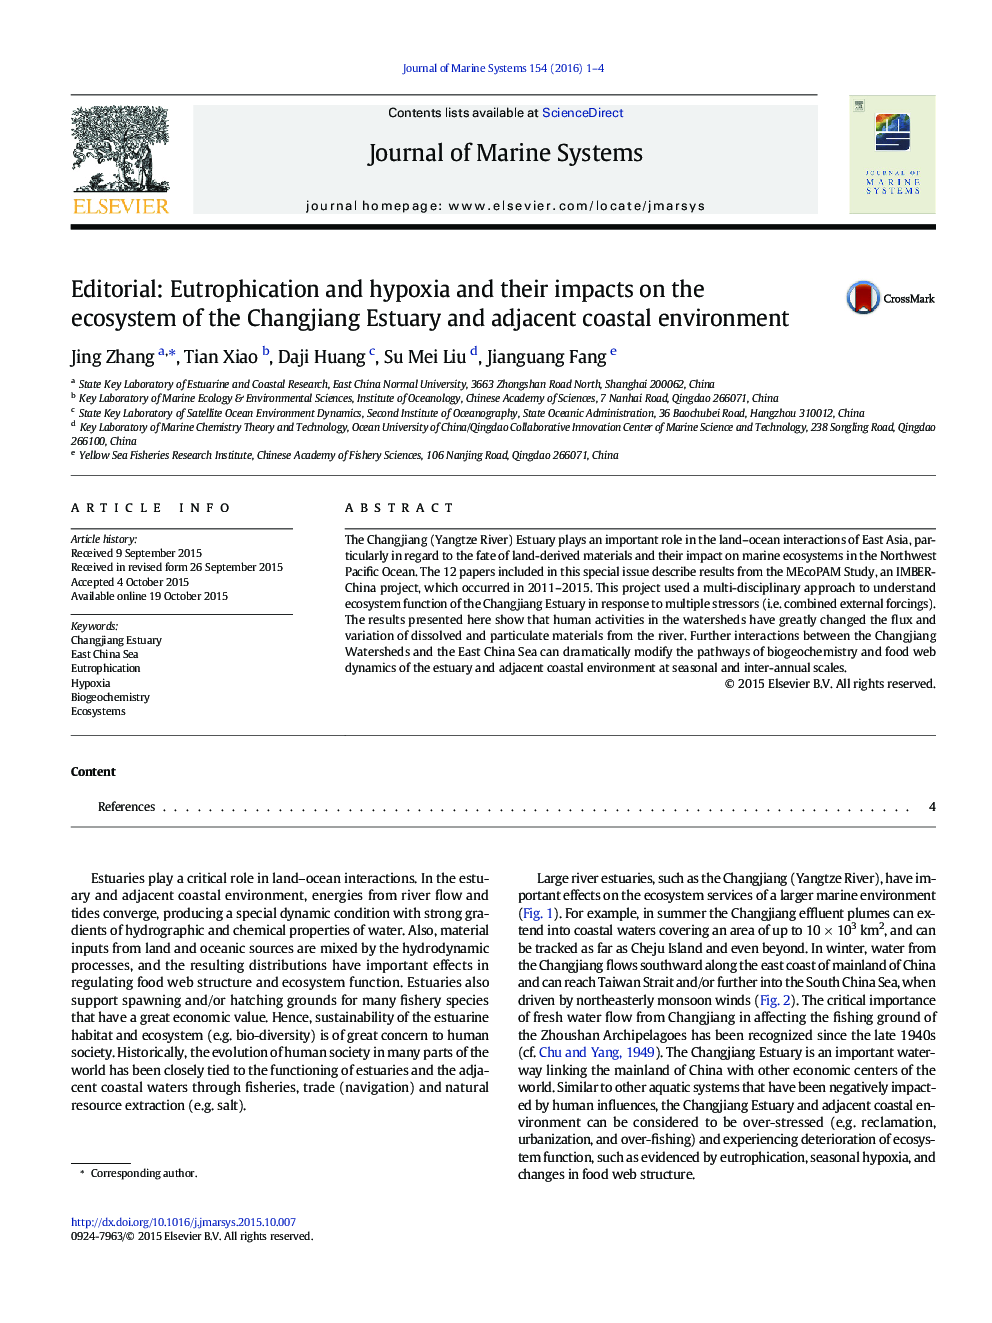 سرمقاله: یوتروفیزاسیون و هیپوکسیا و تأثیر آنها بر اکوسیستم رودخانه چانگ لیانگ و محیط ساحلی مجاور 